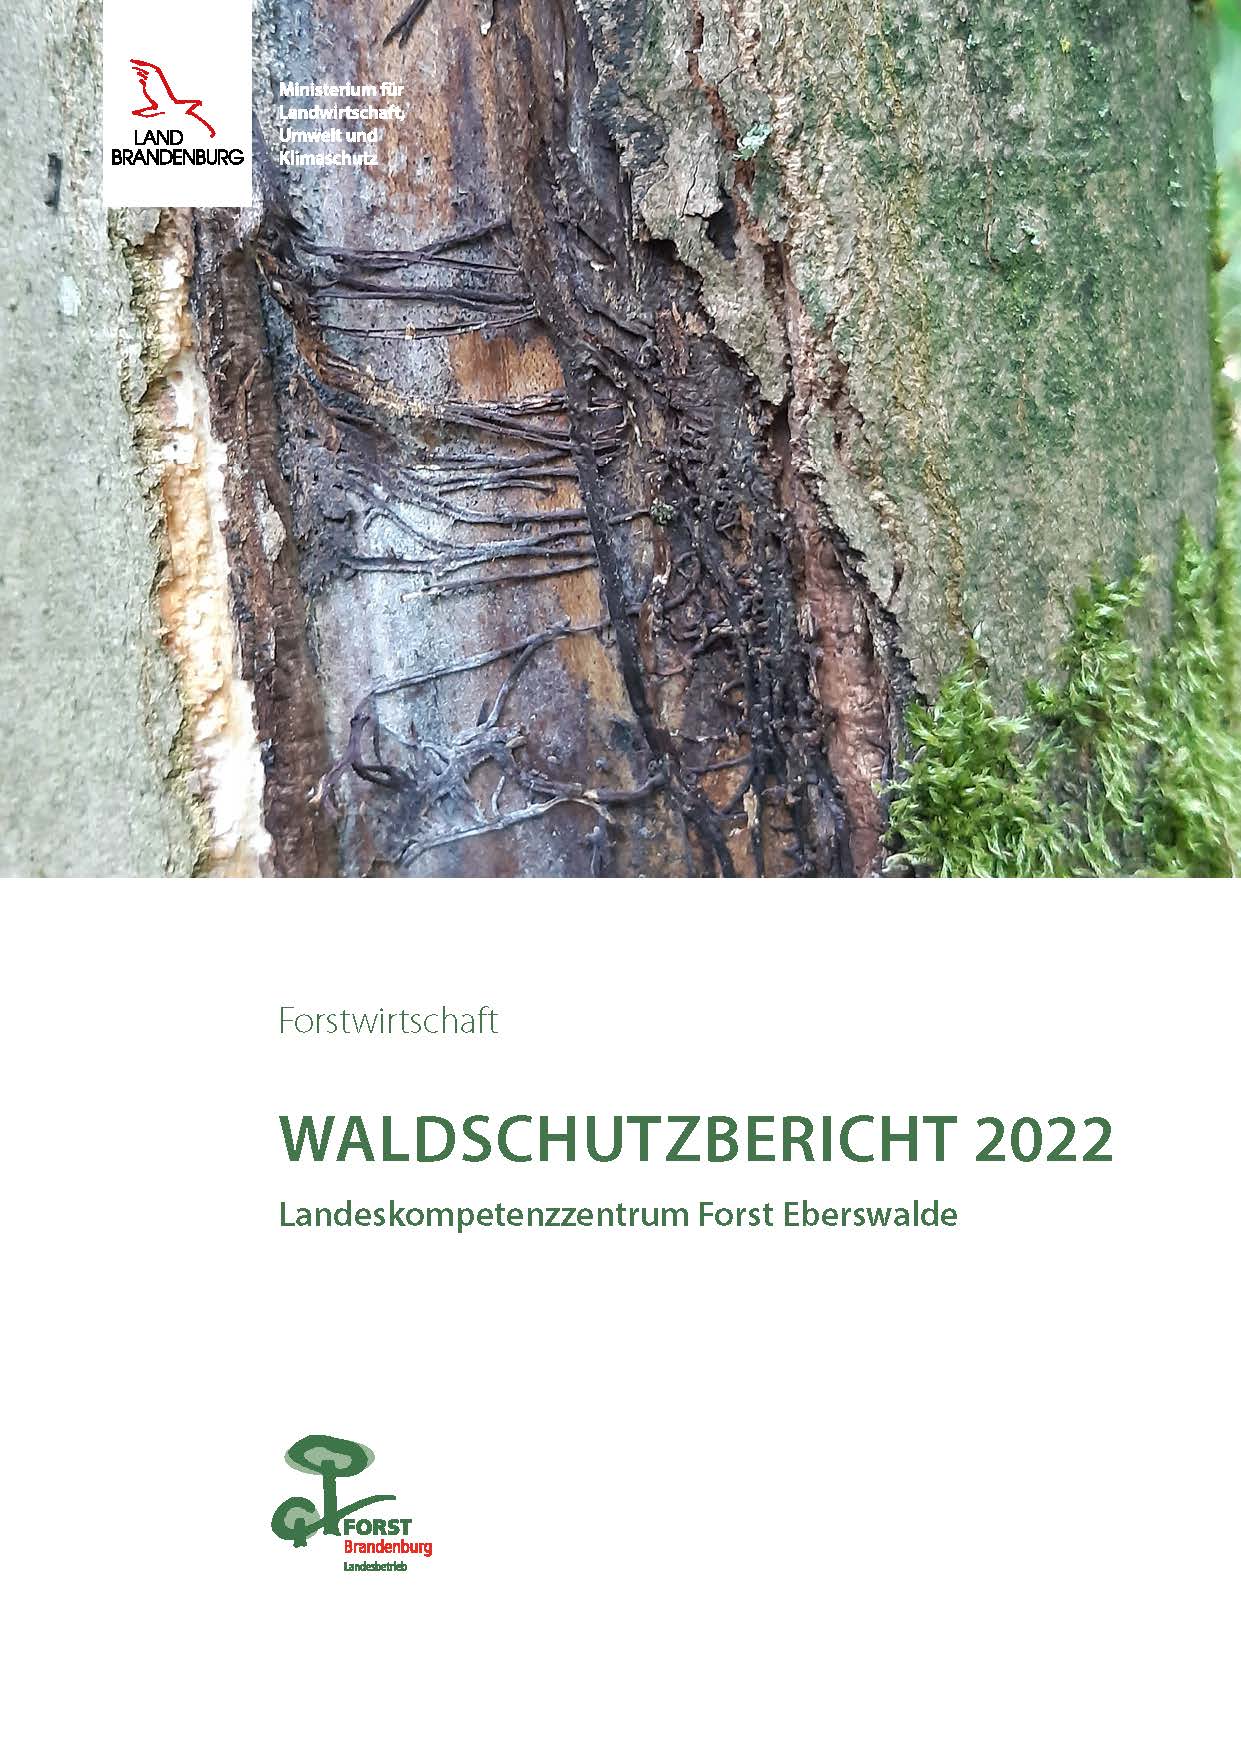 Bild vergrößern (Bild: Waldschutzbericht 2022)